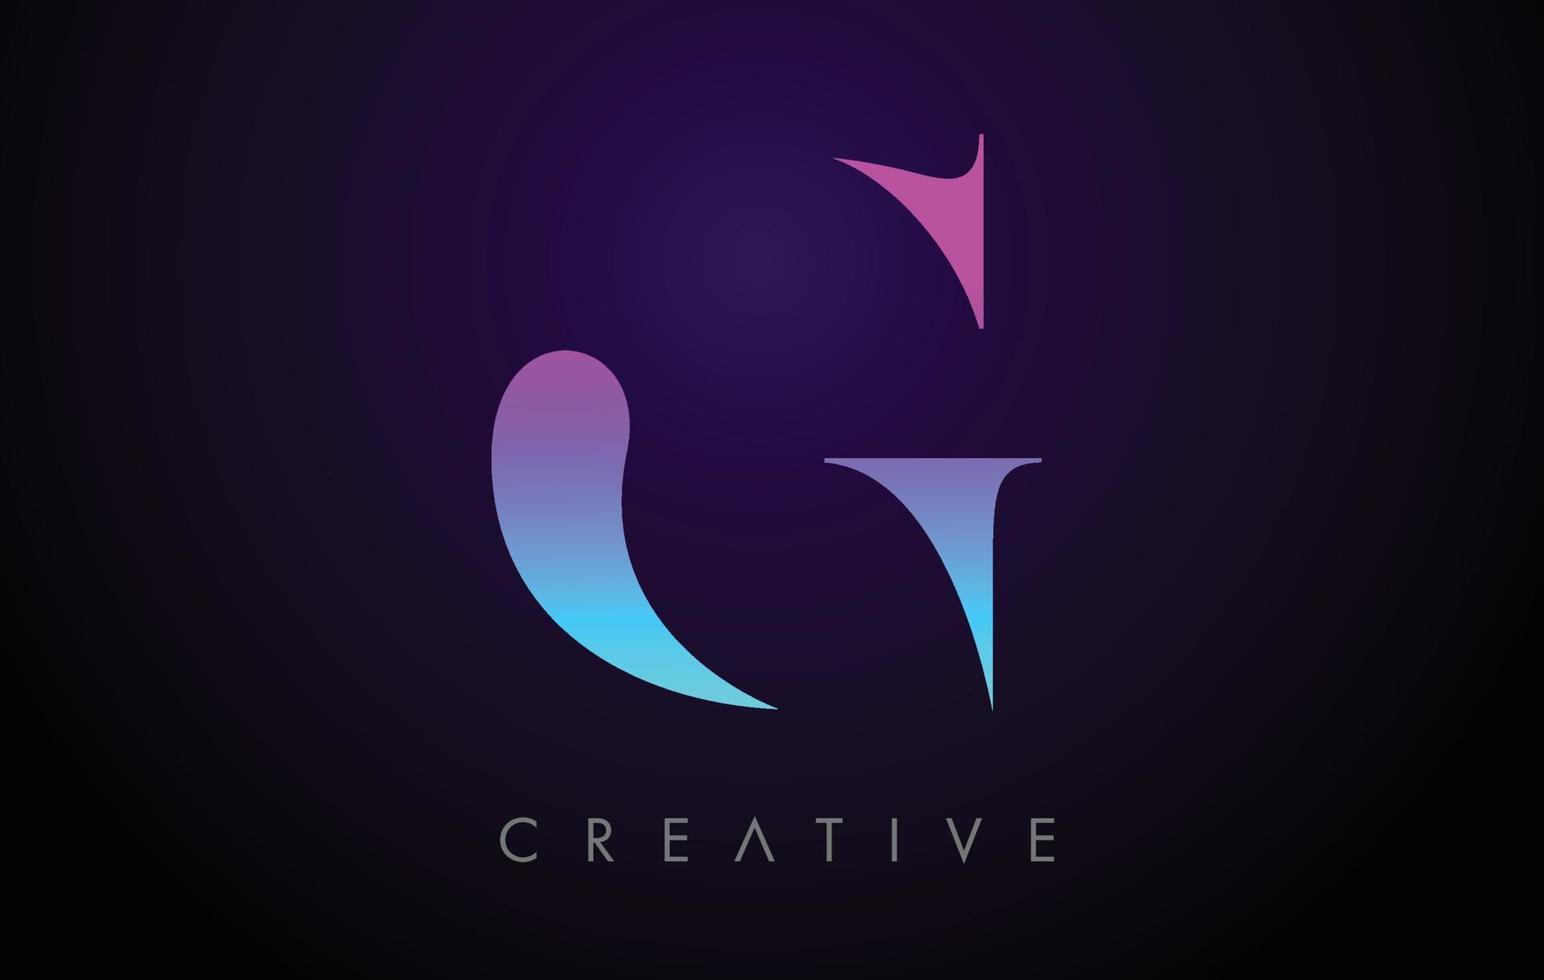 lila blau neon g buchstabe logo design konzept mit minimalistischem stil und serifenschriftvektor vektor